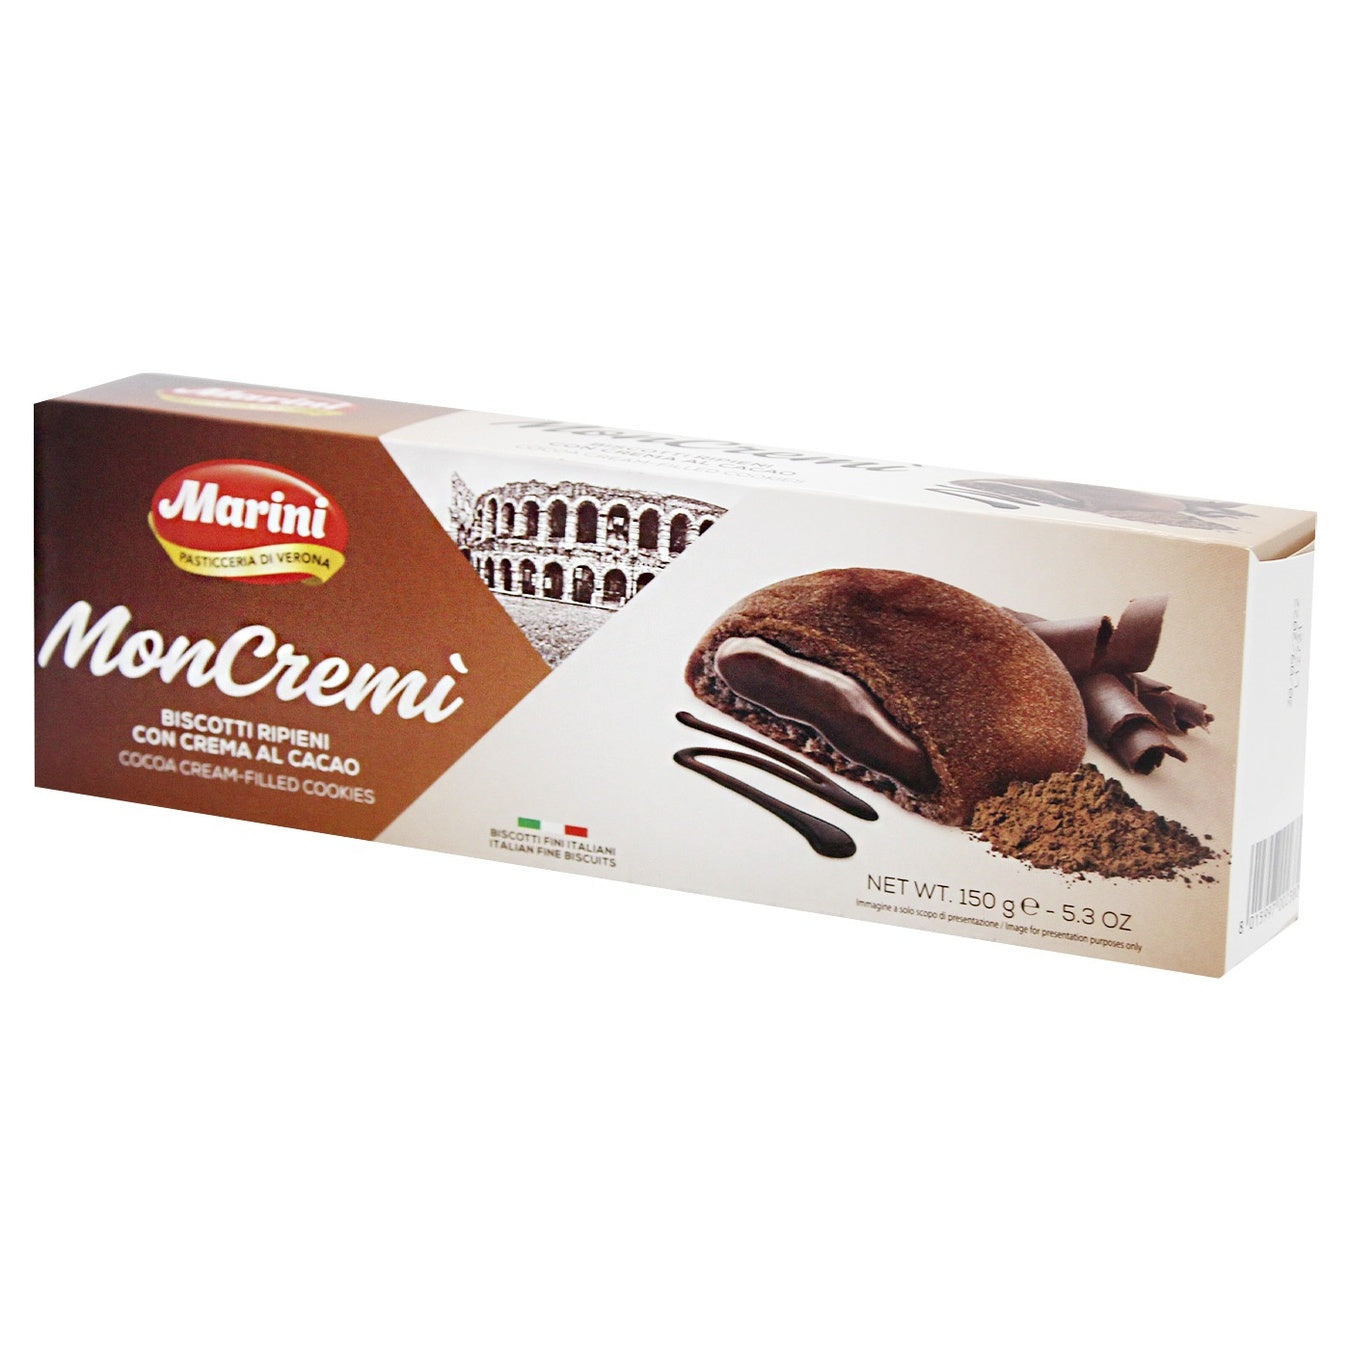 Marini MonCremi Biscotti Ripieni (Cocoa Cream)